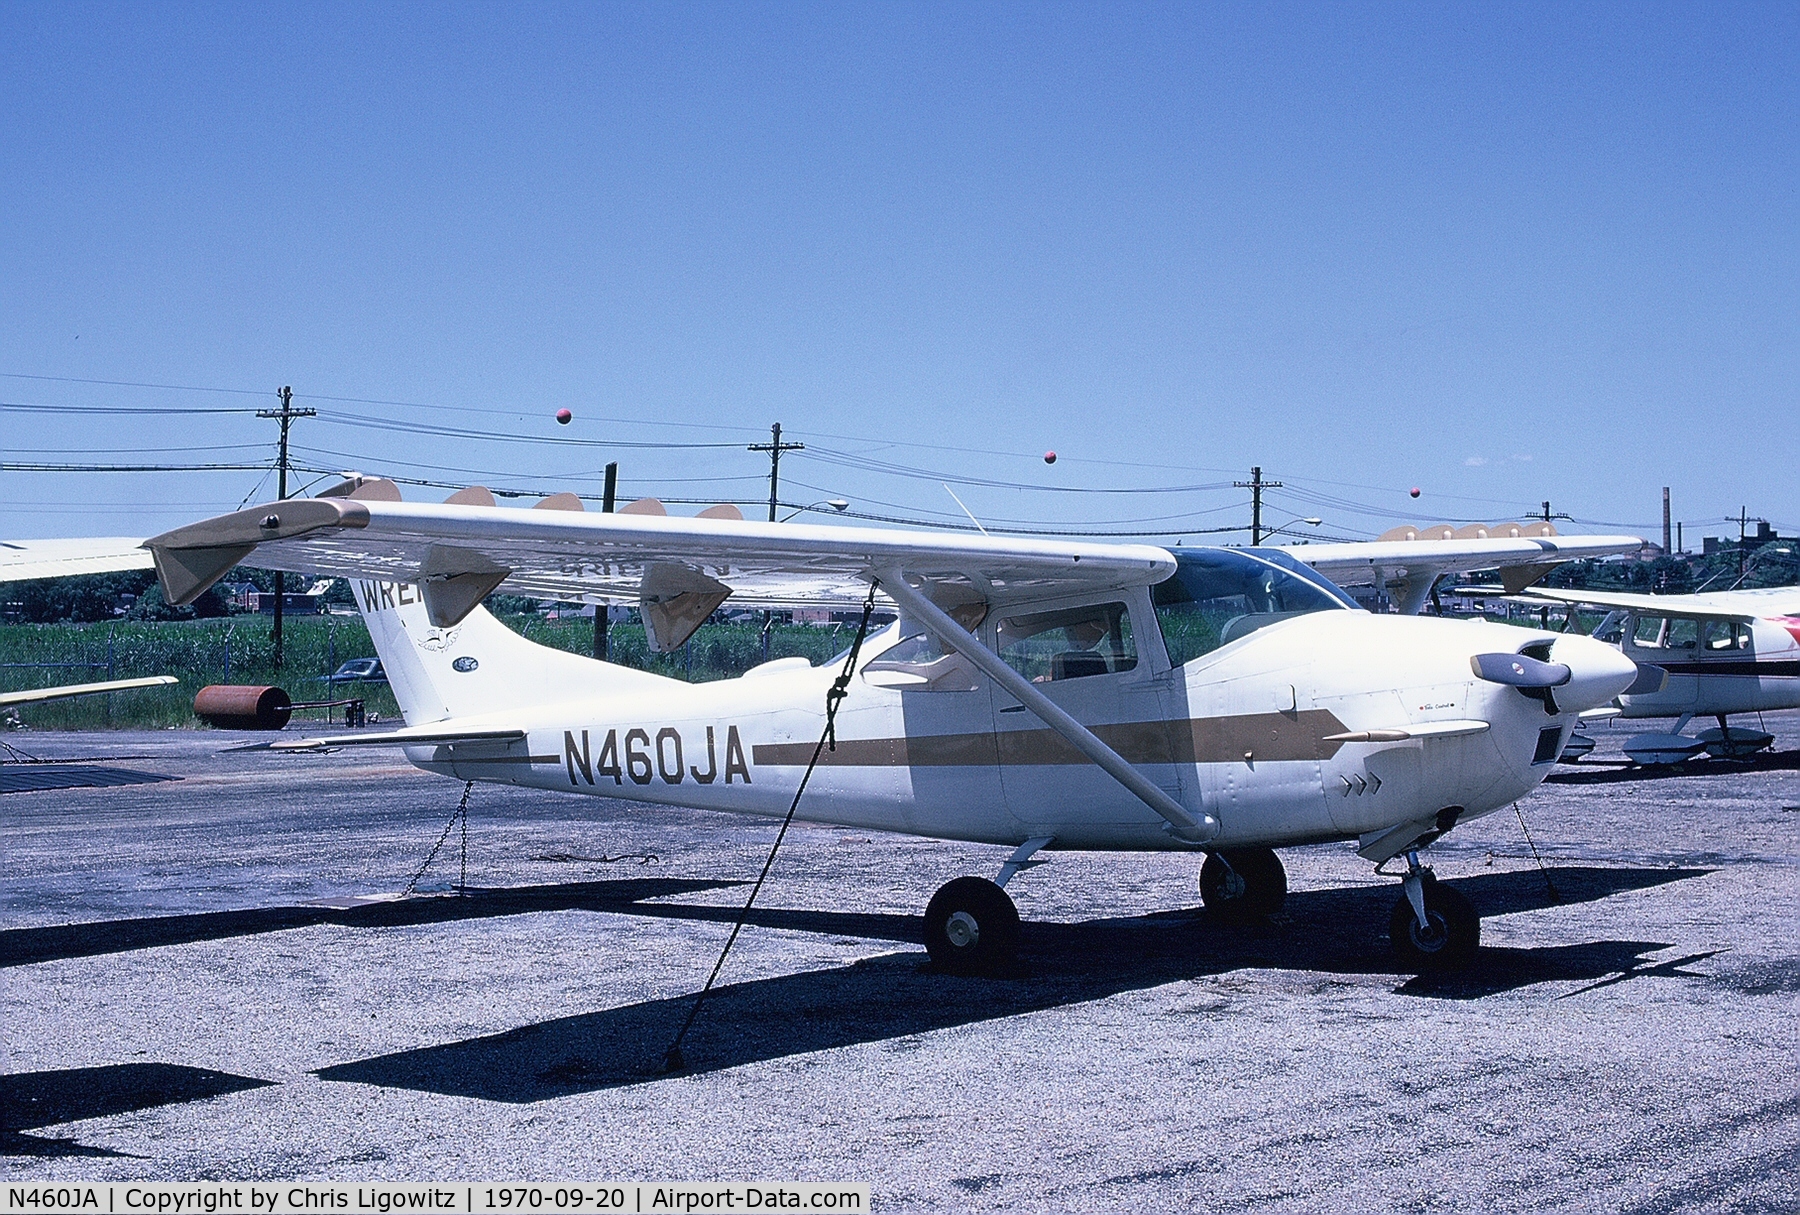 N460JA, Cessna Wren 182G 460 C/N 18255829, Taken at Flushing Airport, Queens, NY